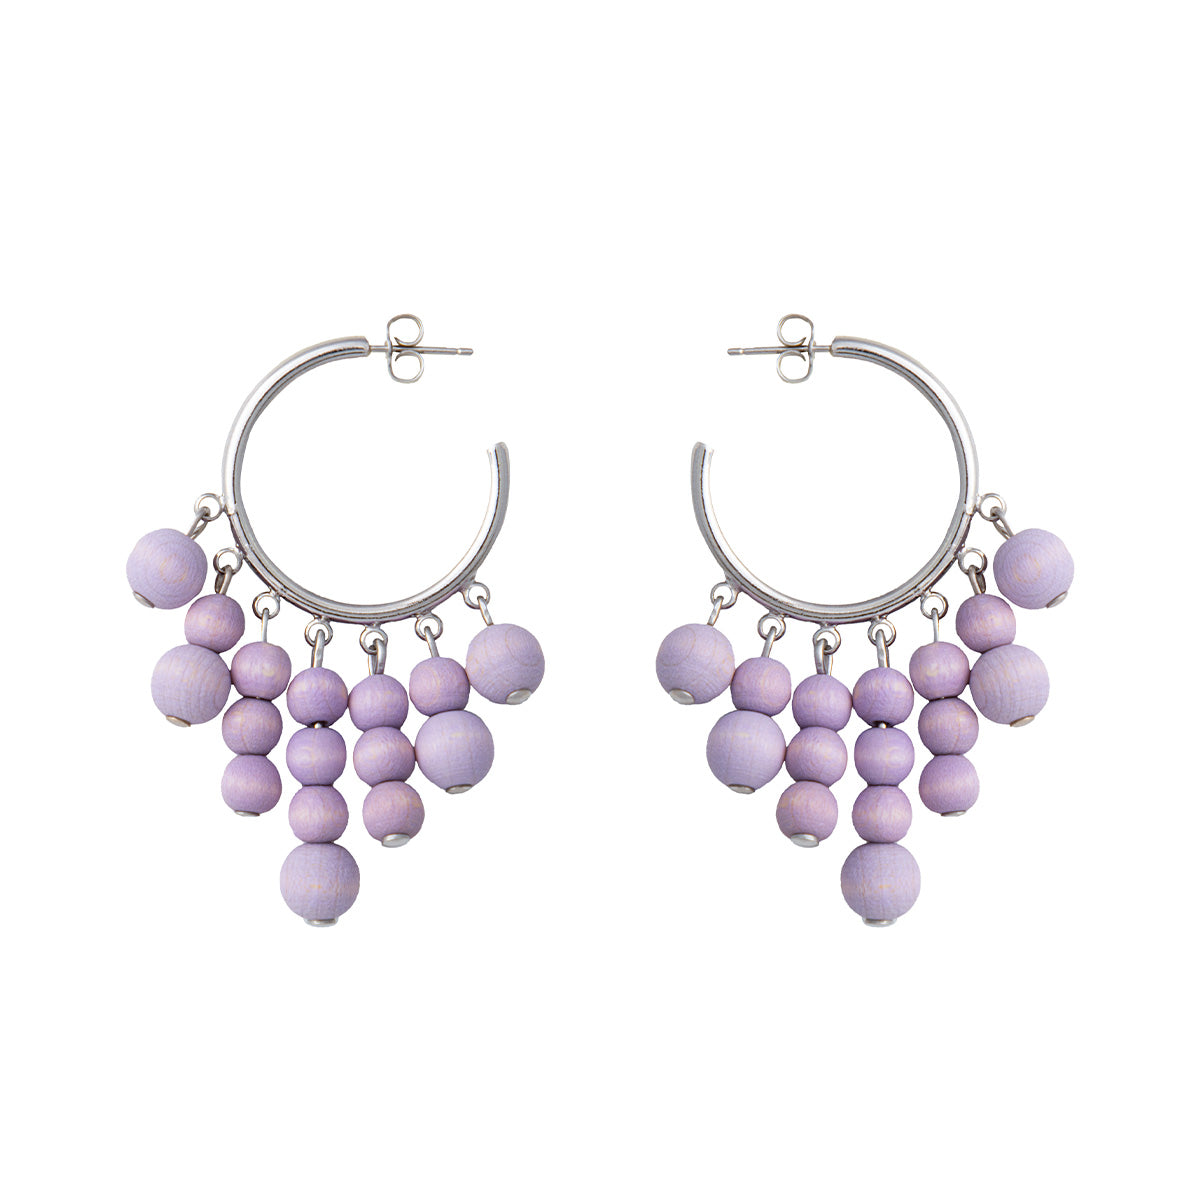 Gisella earrings, lavender